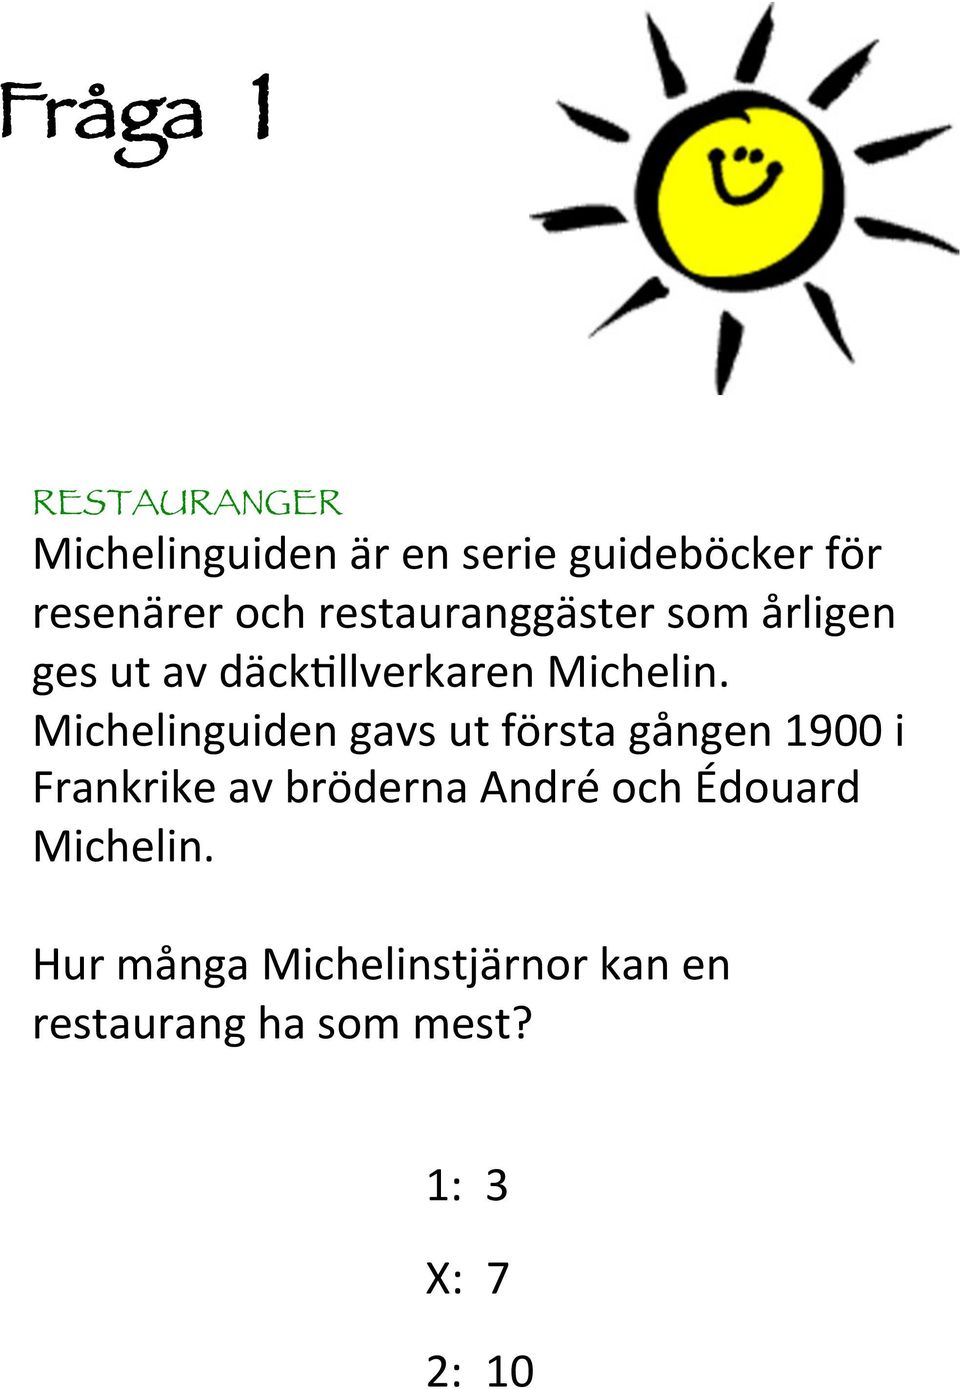 Michelinguiden gavs ut första gången 900 i Frankrike av bröderna André och